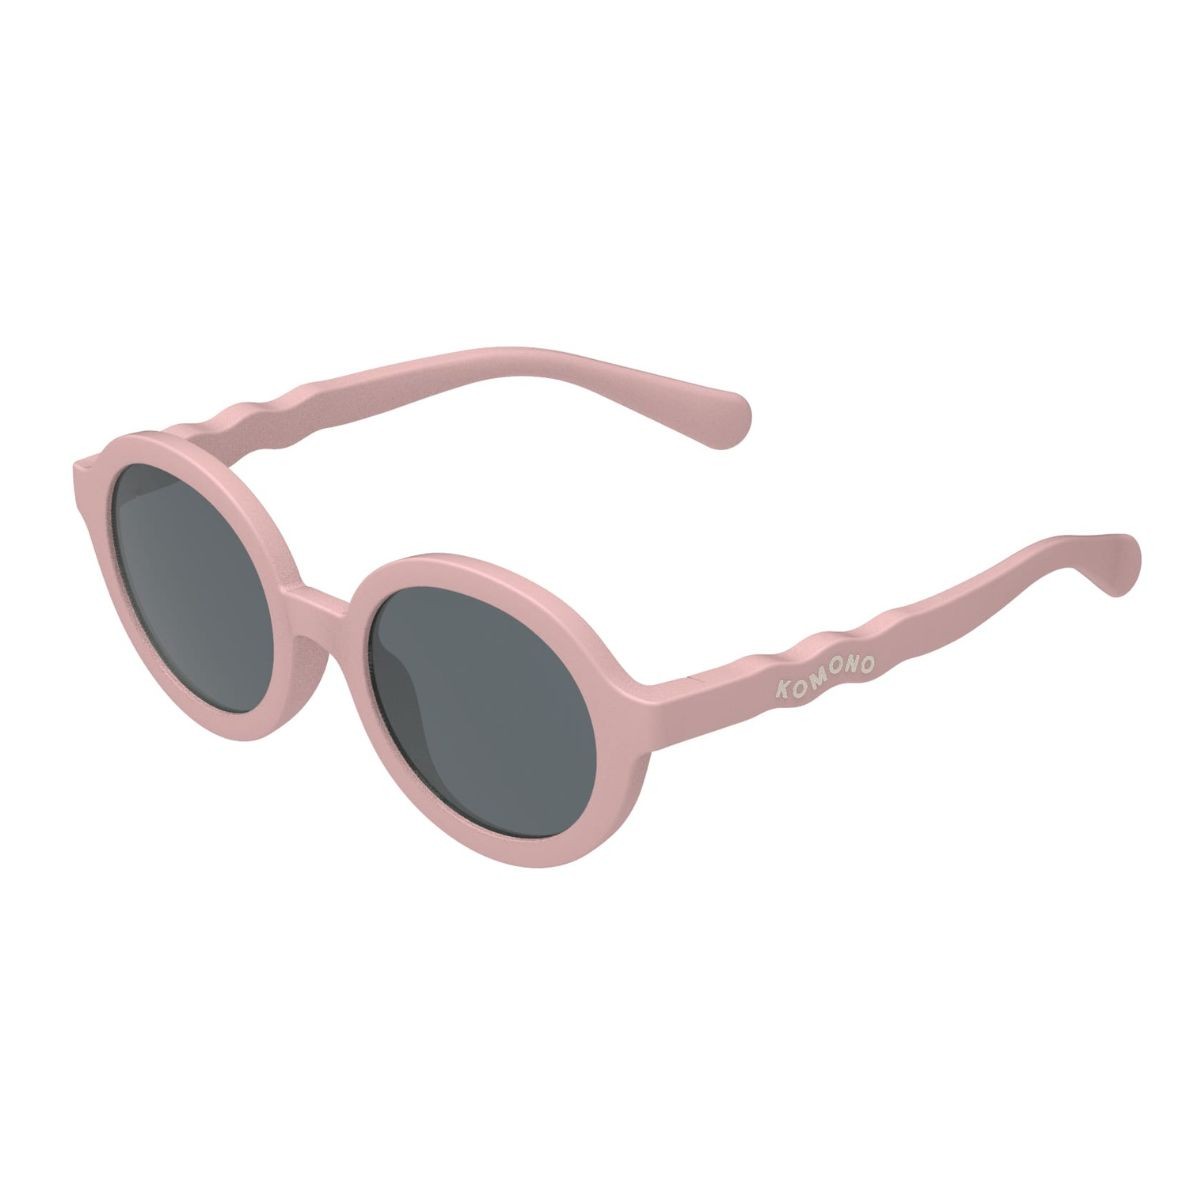 Sunglasses 1-3y Blush - Komono